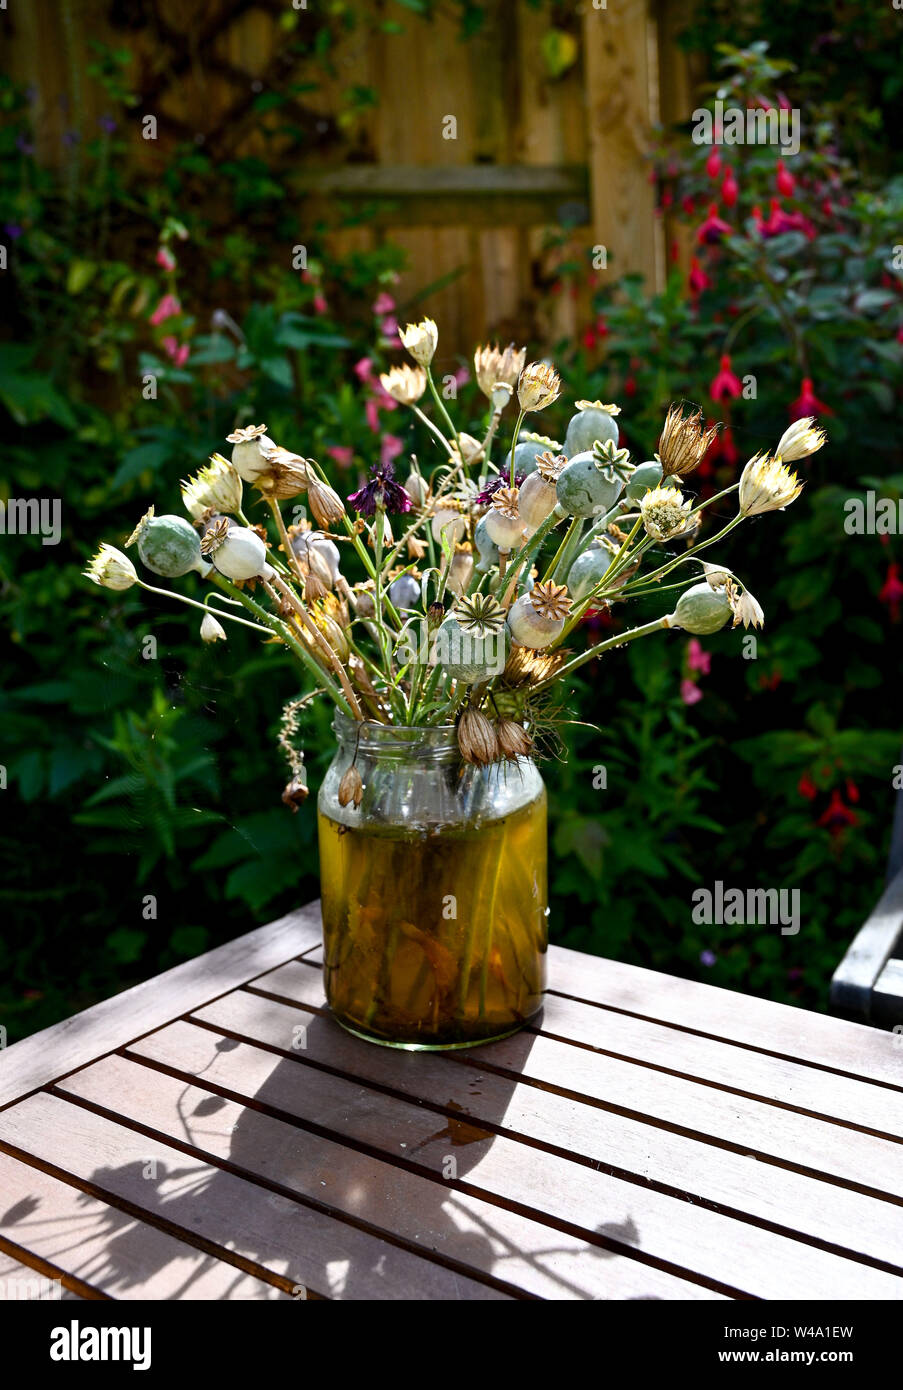 Les fleurs séchées et écran, y compris les graines de têtes de pavot dans un vase à l'extérieur dans un jardin Banque D'Images